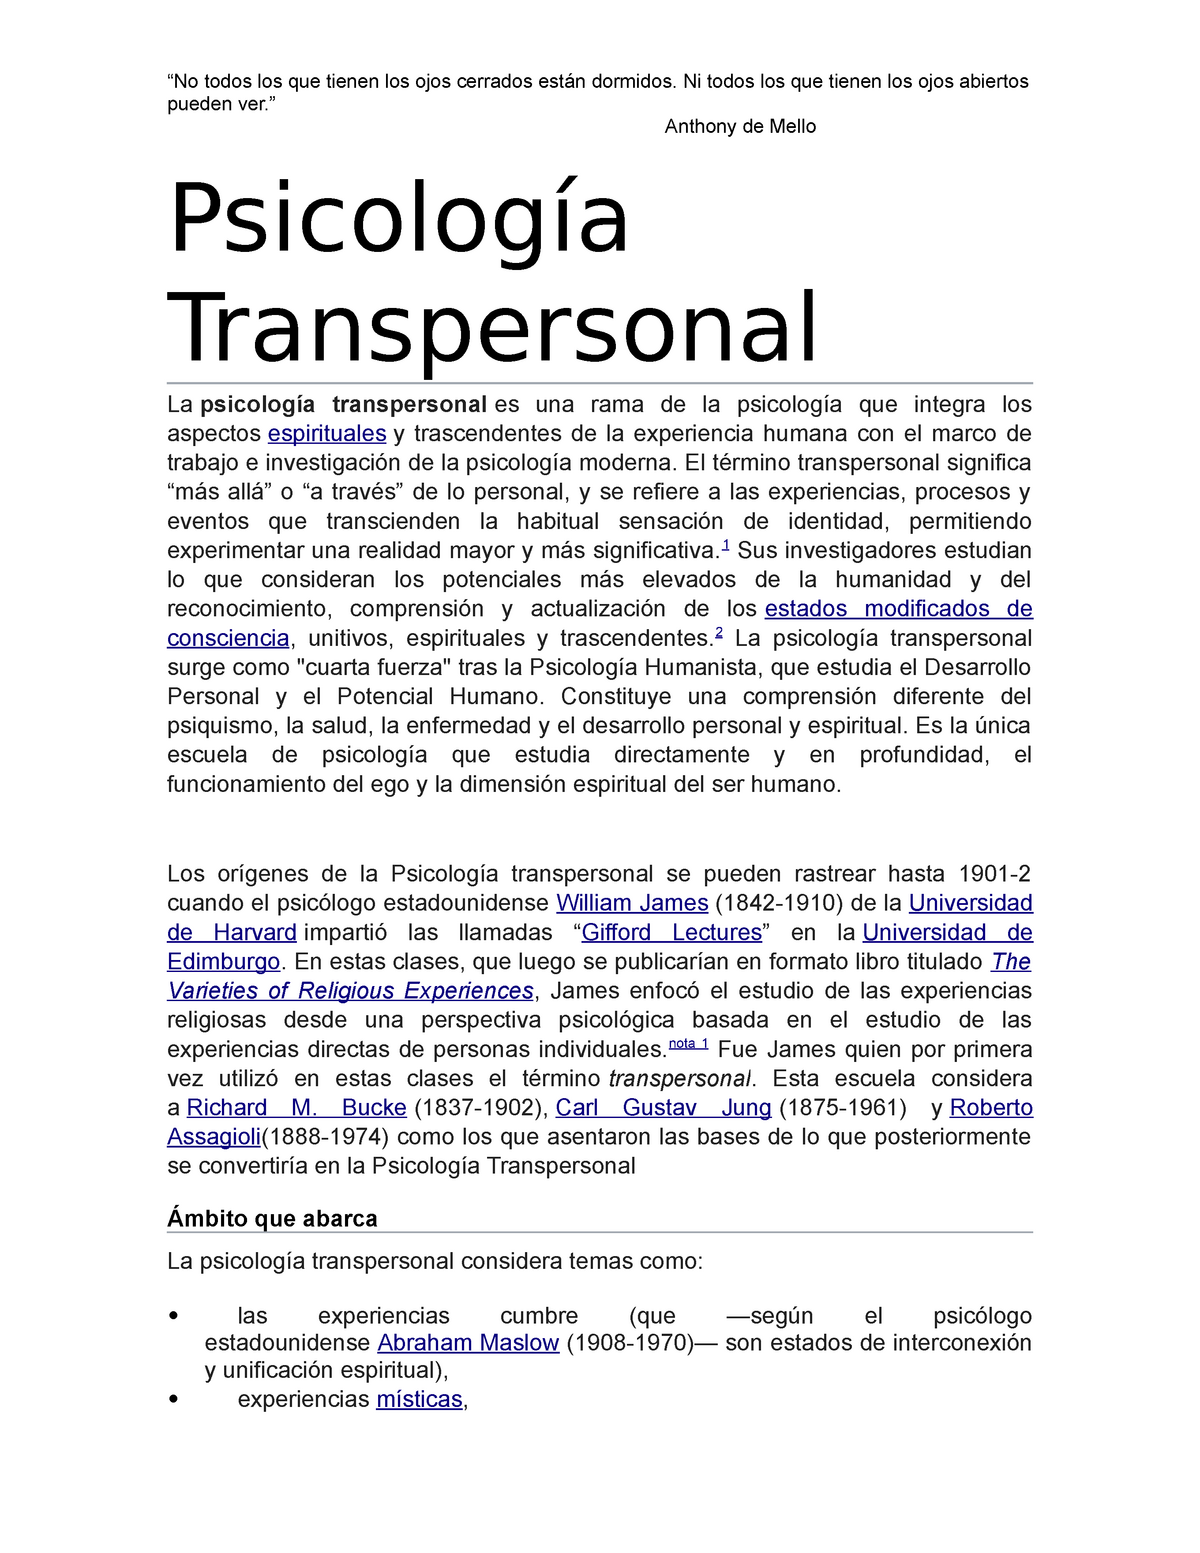 Capítulo III: William James y la Psiquiatría y Psicología Transpersonal –  PSYTRANSPERSONAL